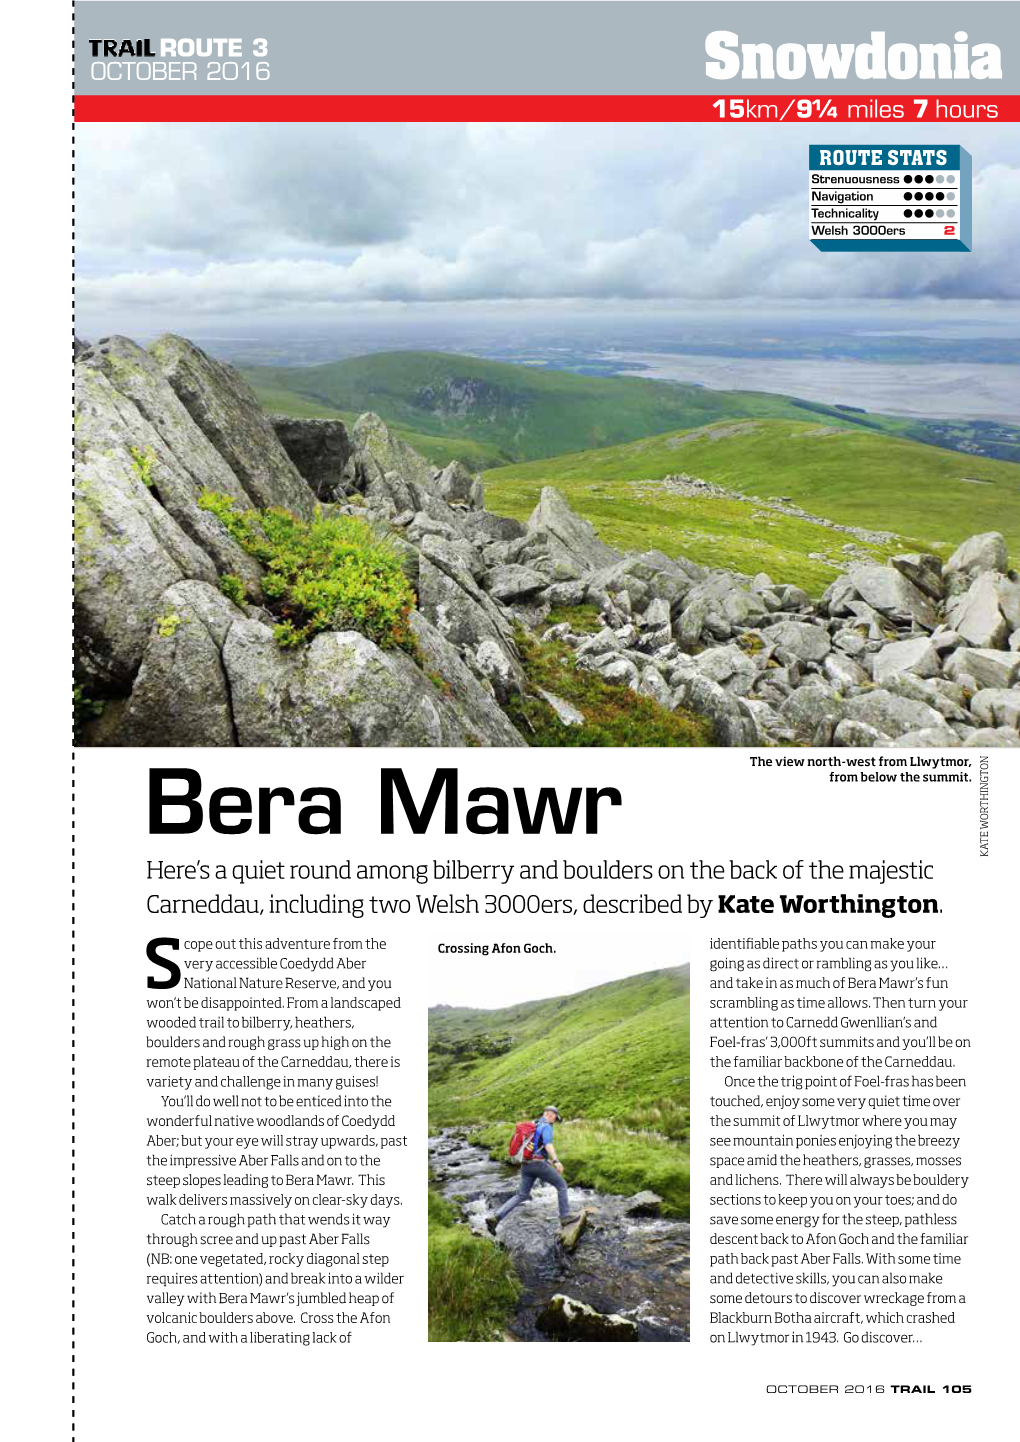 Bera Mawr from Below the Summit